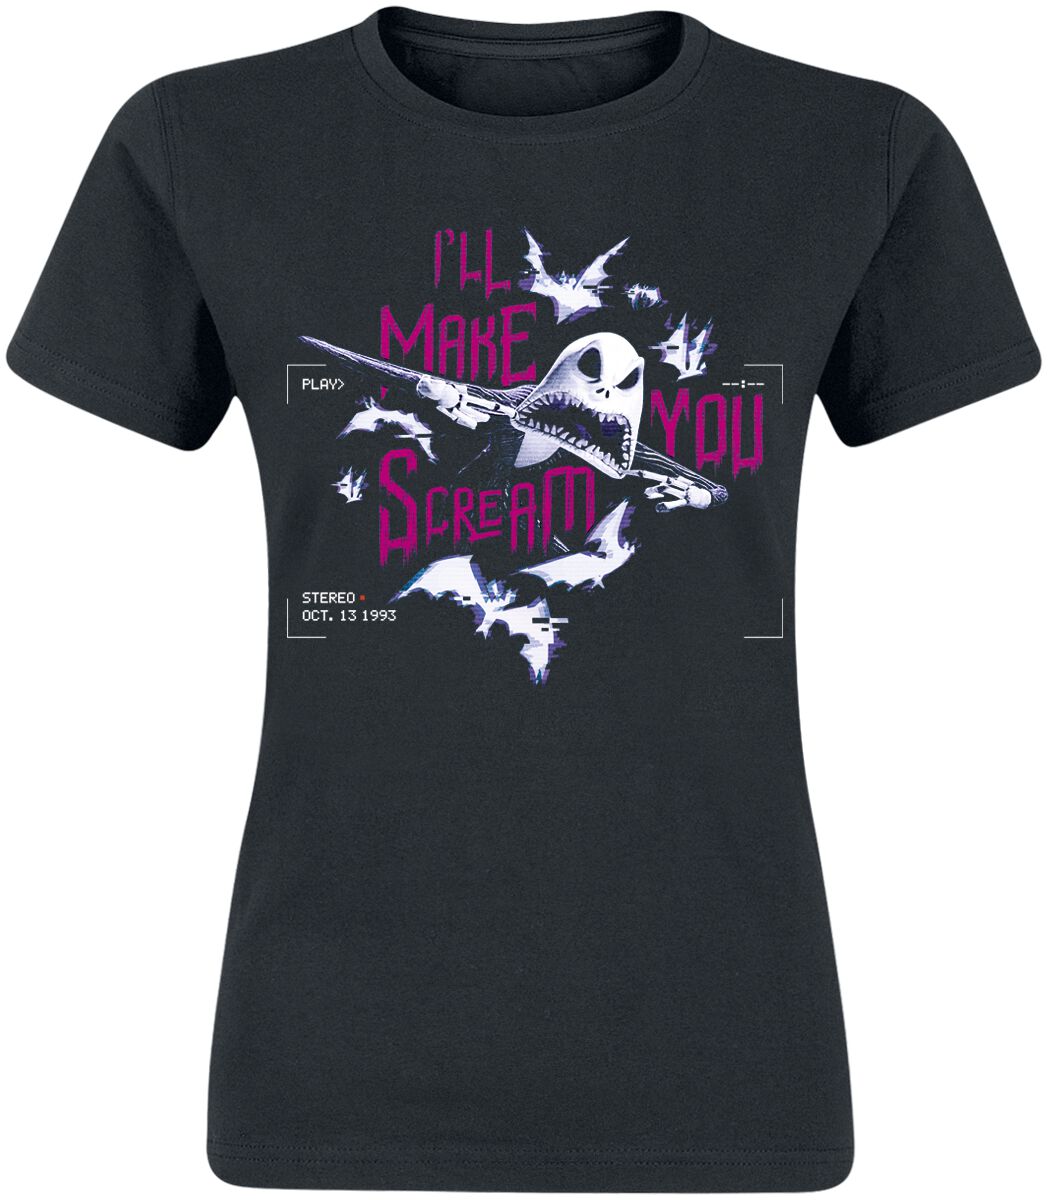 The Nightmare Before Christmas T-Shirt - Make You Scream - S bis XXL - für Damen - Größe M - schwarz  - EMP exklusives Merchandise!